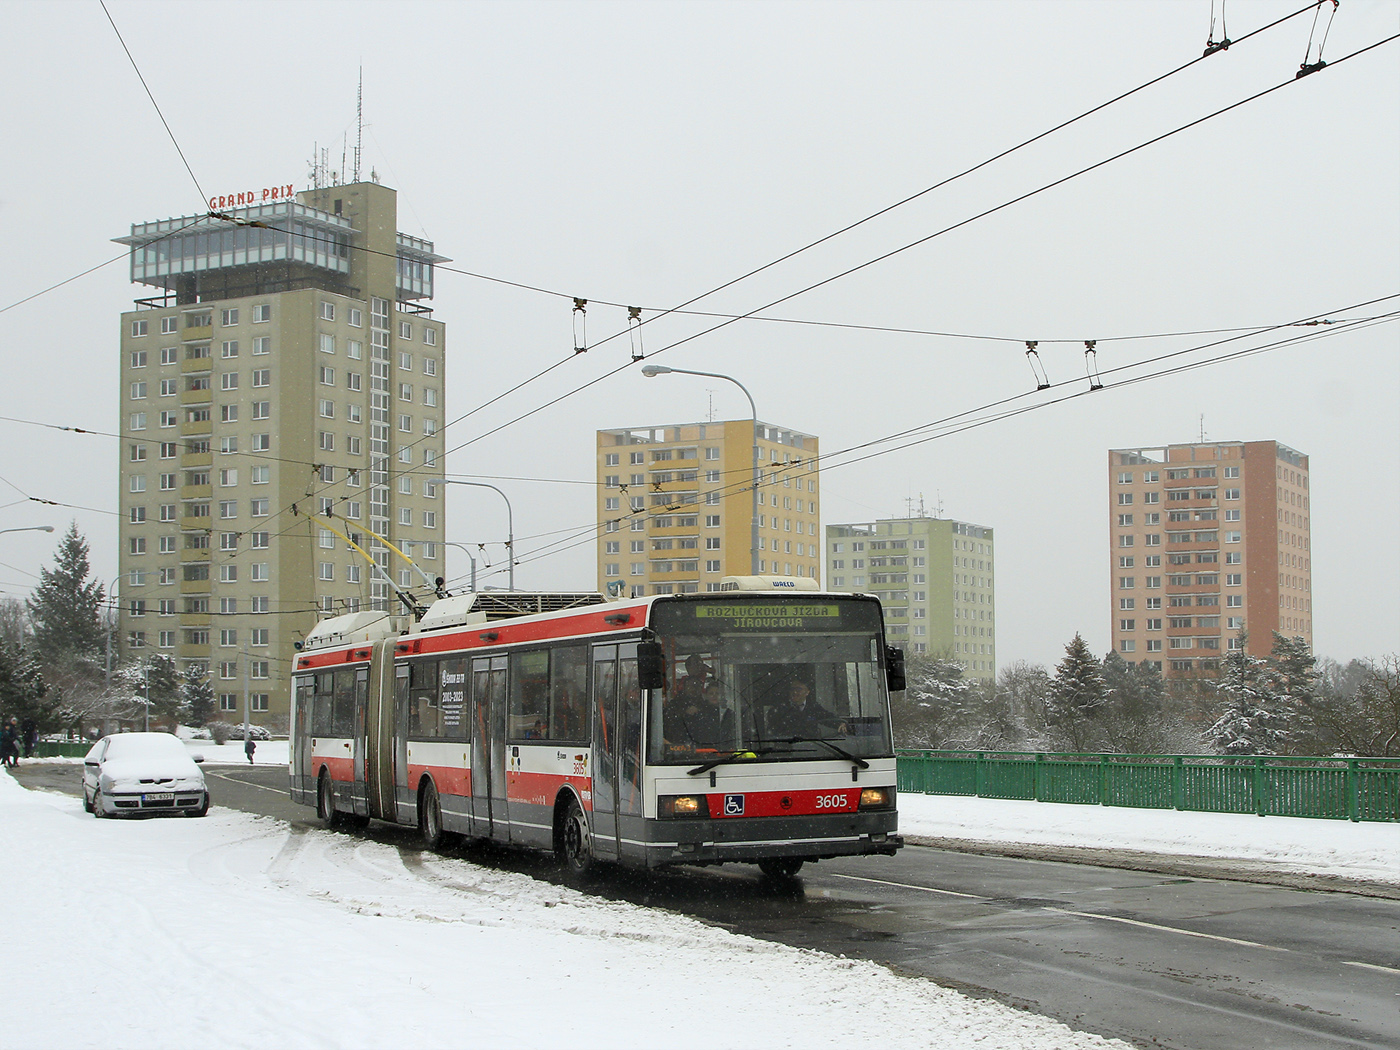 Brno, Škoda 22Tr № 3605; Brno — Farewell with Škoda 22Tr trolleybuses